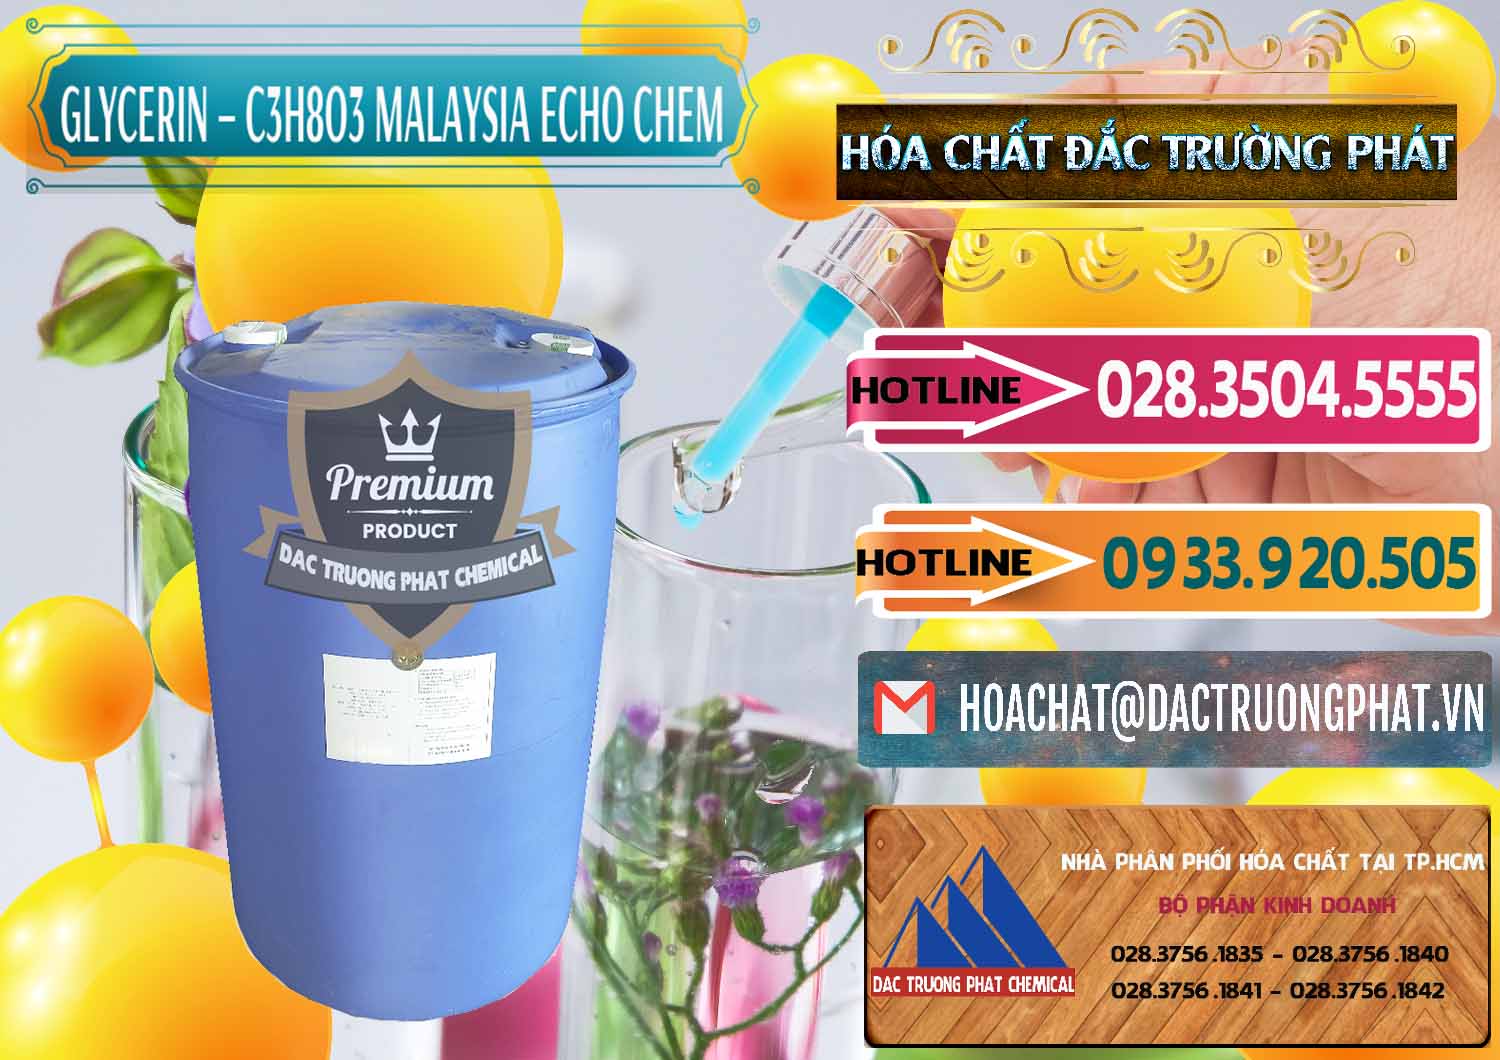 Nhà phân phối - bán C3H8O3 - Glycerin 99.7% Echo Chem Malaysia - 0273 - Đơn vị chuyên cung cấp & kinh doanh hóa chất tại TP.HCM - dactruongphat.vn